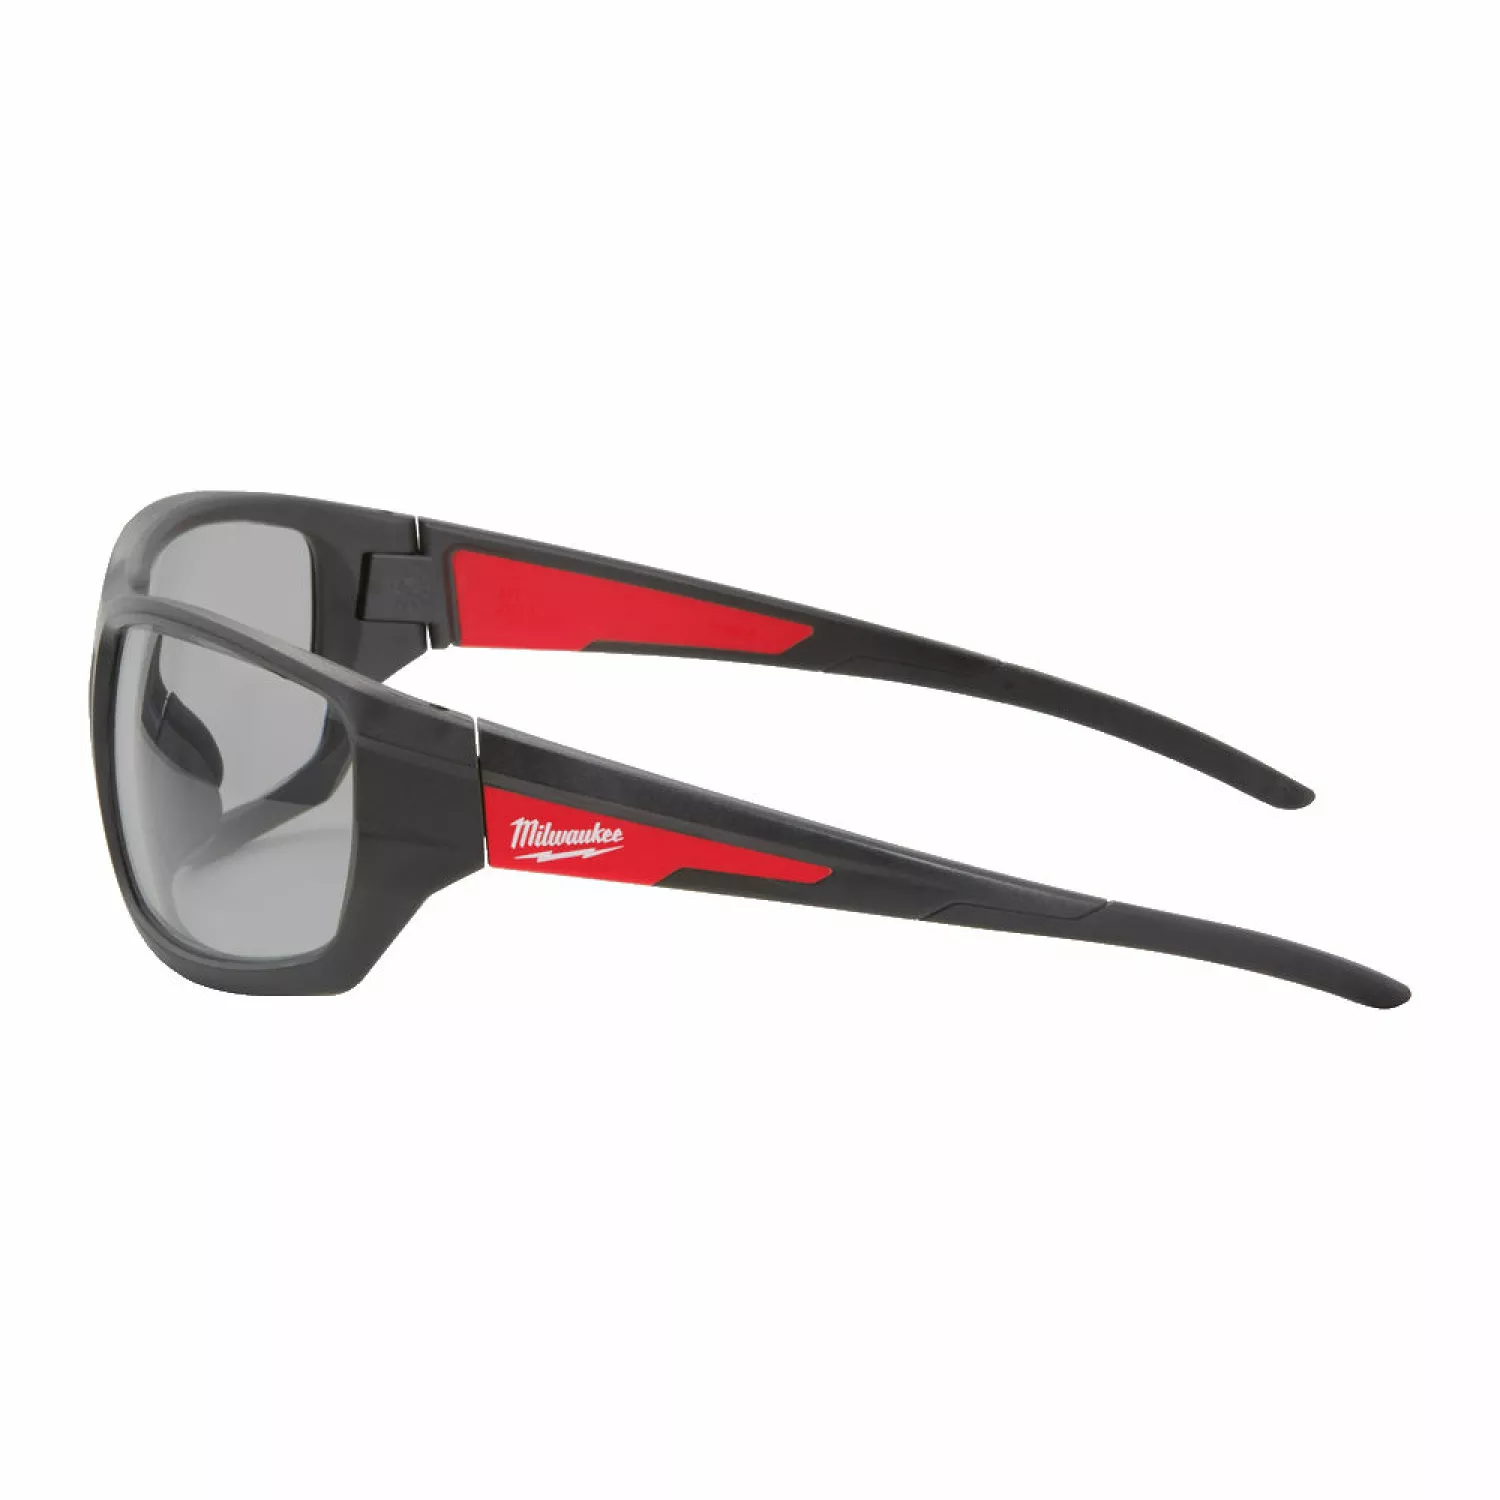 Milwaukee 4932478908 Performance veiligheidsbril - grijs-image